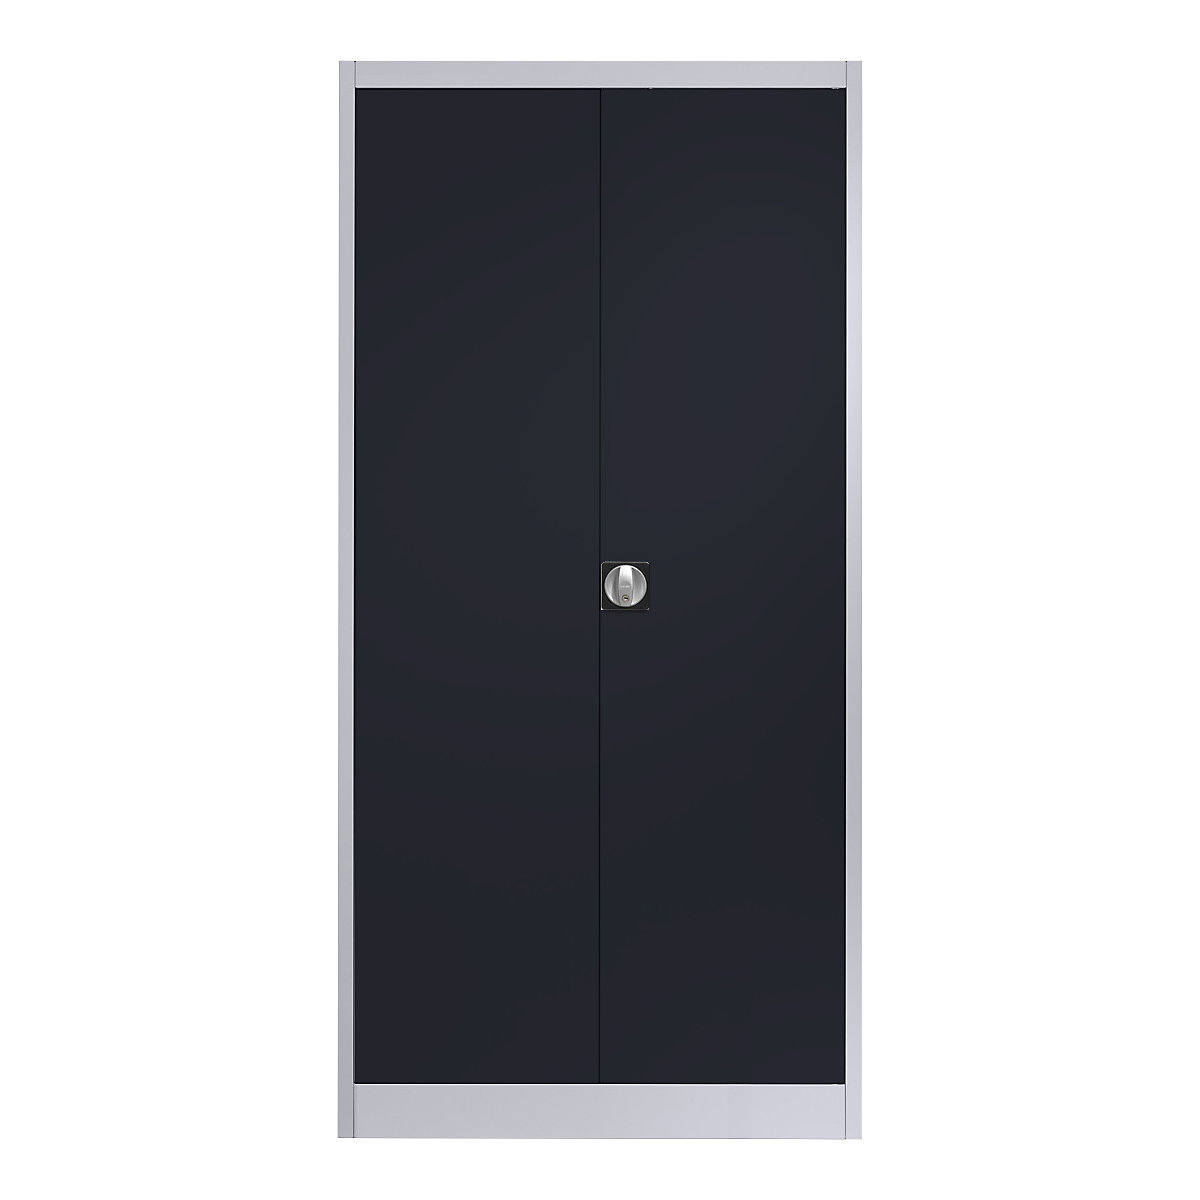 Ocelová skříň s otočnými dveřmi – mauser, 4 police, h 420 mm, bílá hliníková / antracitově šedá, od 2 ks-6